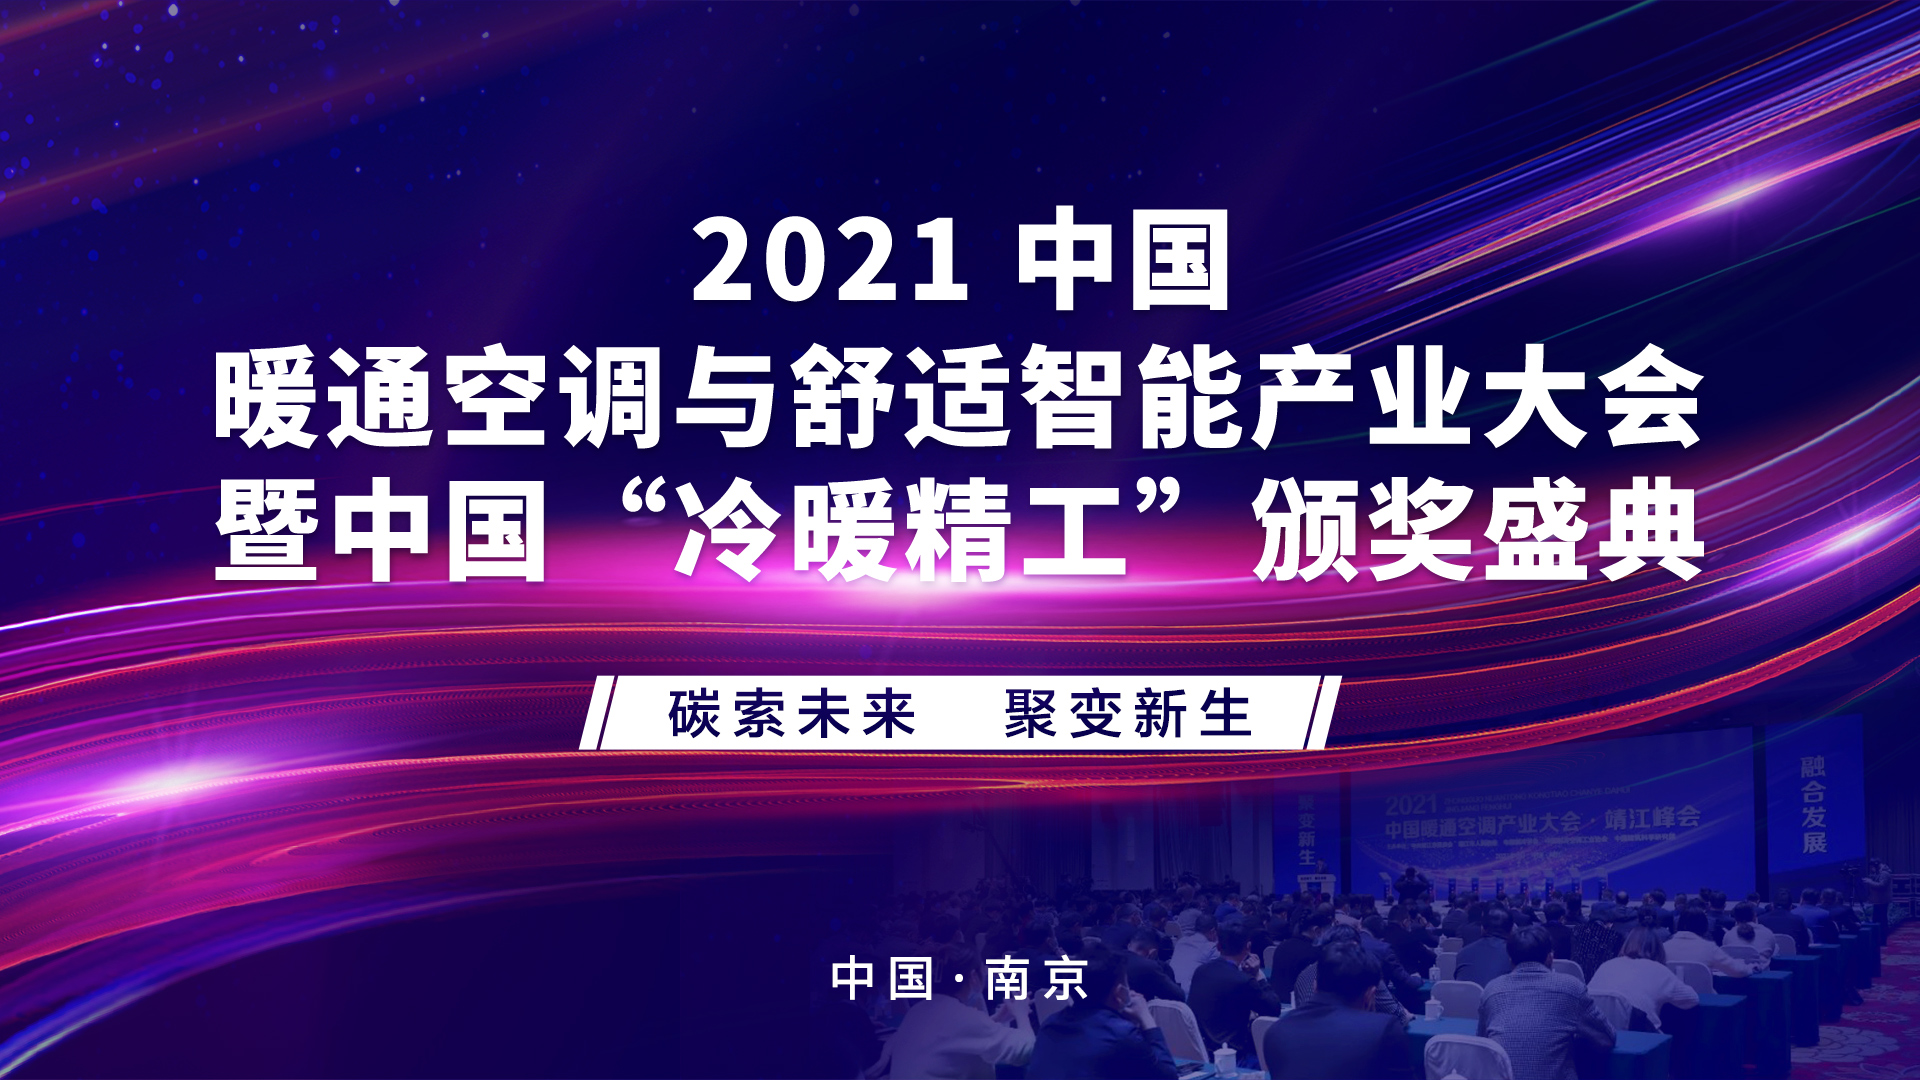 得心应手，麦向未来--得麦邀您参加2021中国暖通空调与舒适智能产业大会南京峰会